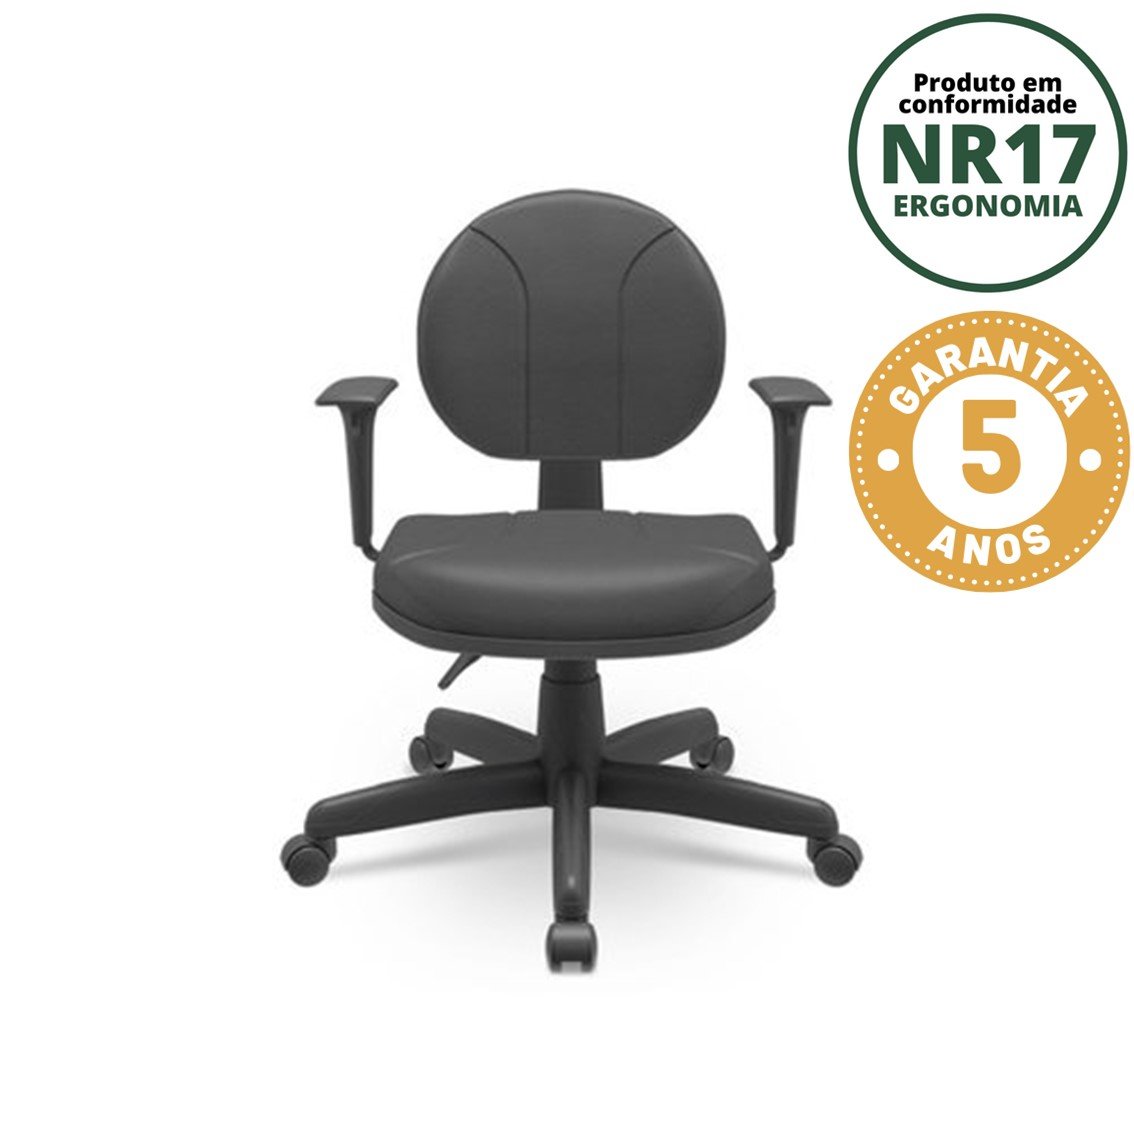 Cadeira para Escritório Ergonômica Secretária Backsystem Operativa NR17 